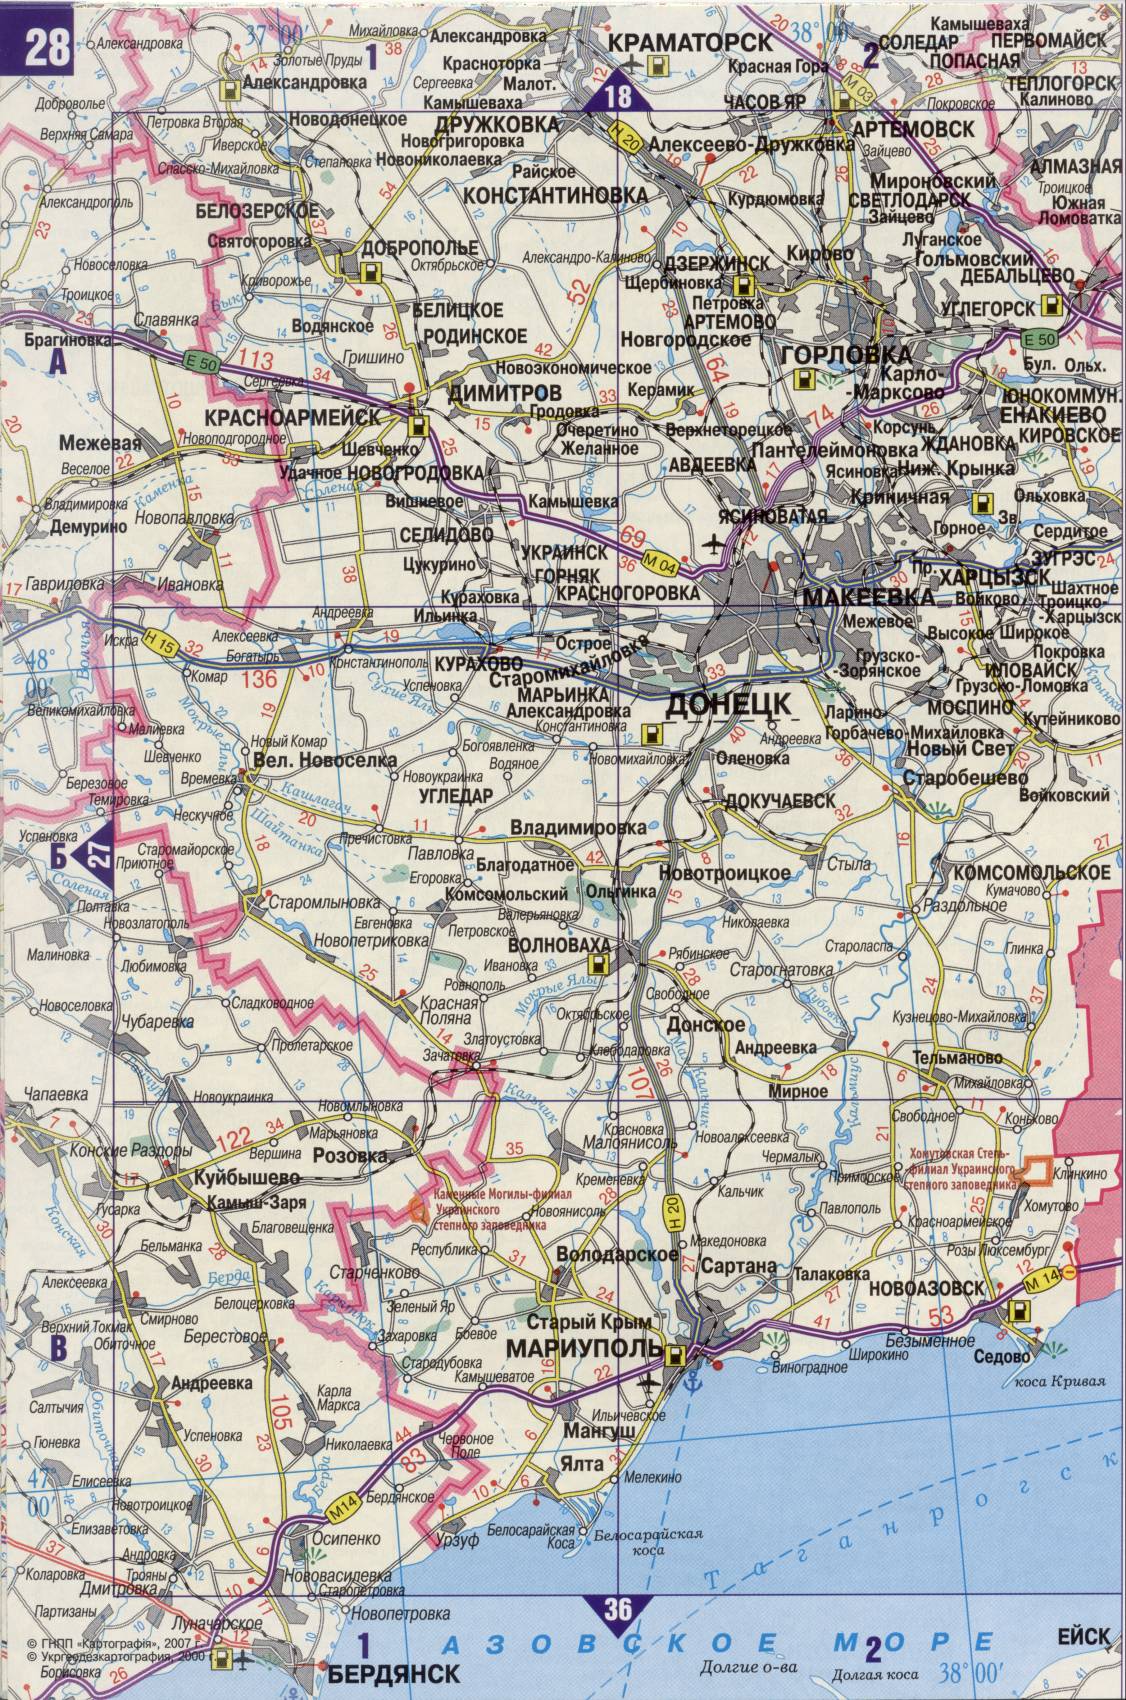 Karte der Ukraine. Detaillierte Straßenkarte der Ukraine avtomobilnog Satin. kostenlos herunterladen, I2